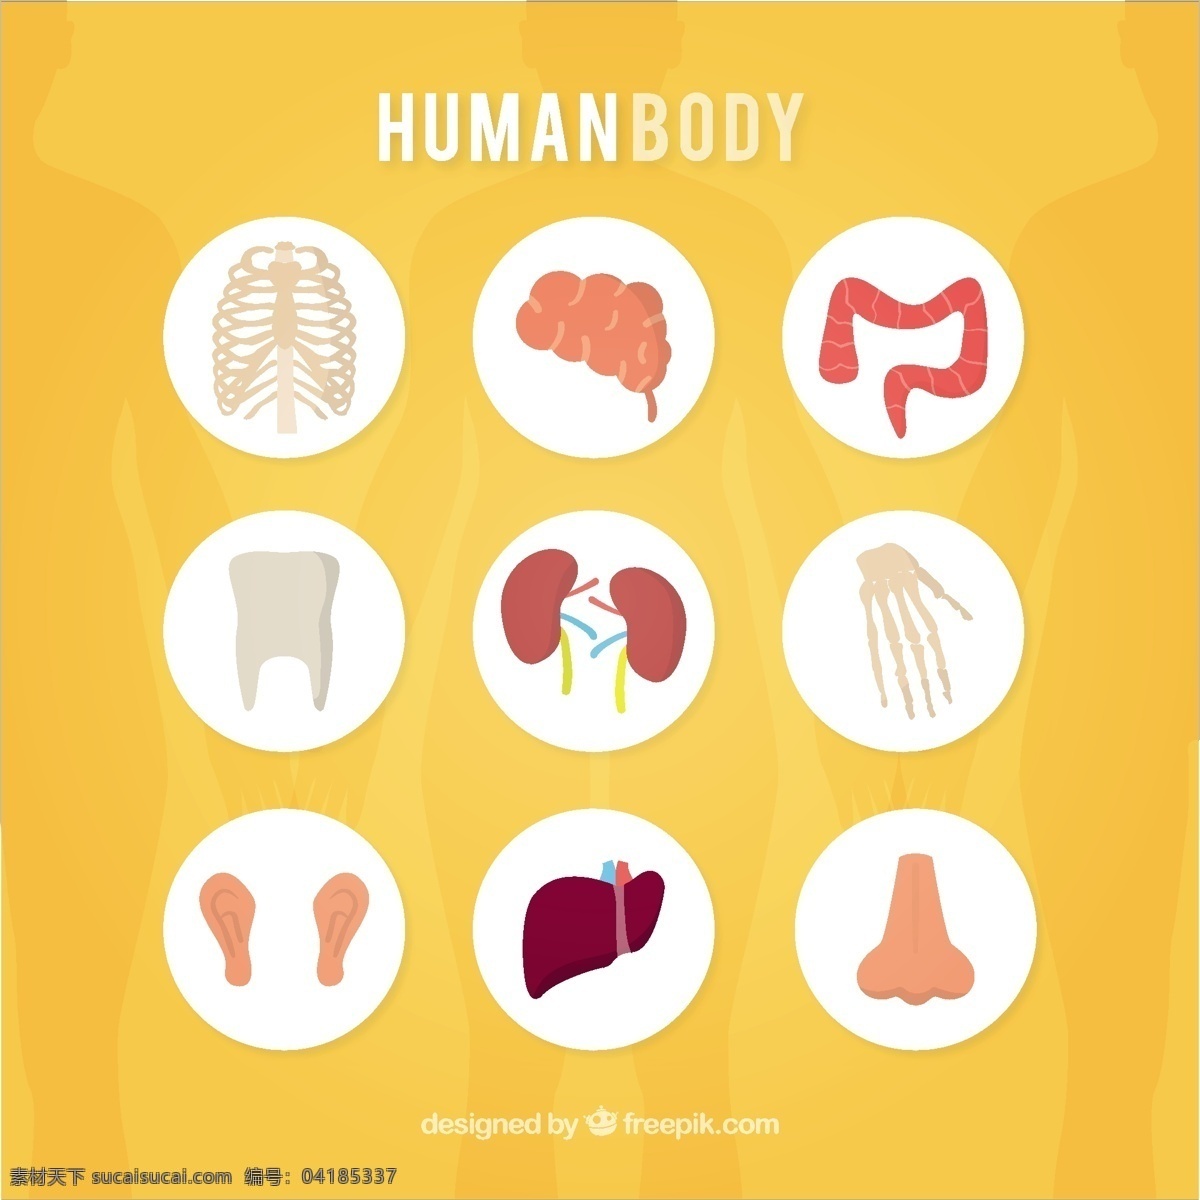 人体的图标 图示 手 手画 人 医学 研究 牙齿 人体 手图示 解剖学 画 骨 噪声 肾脏 器官 耳朵 身体部位 黄色